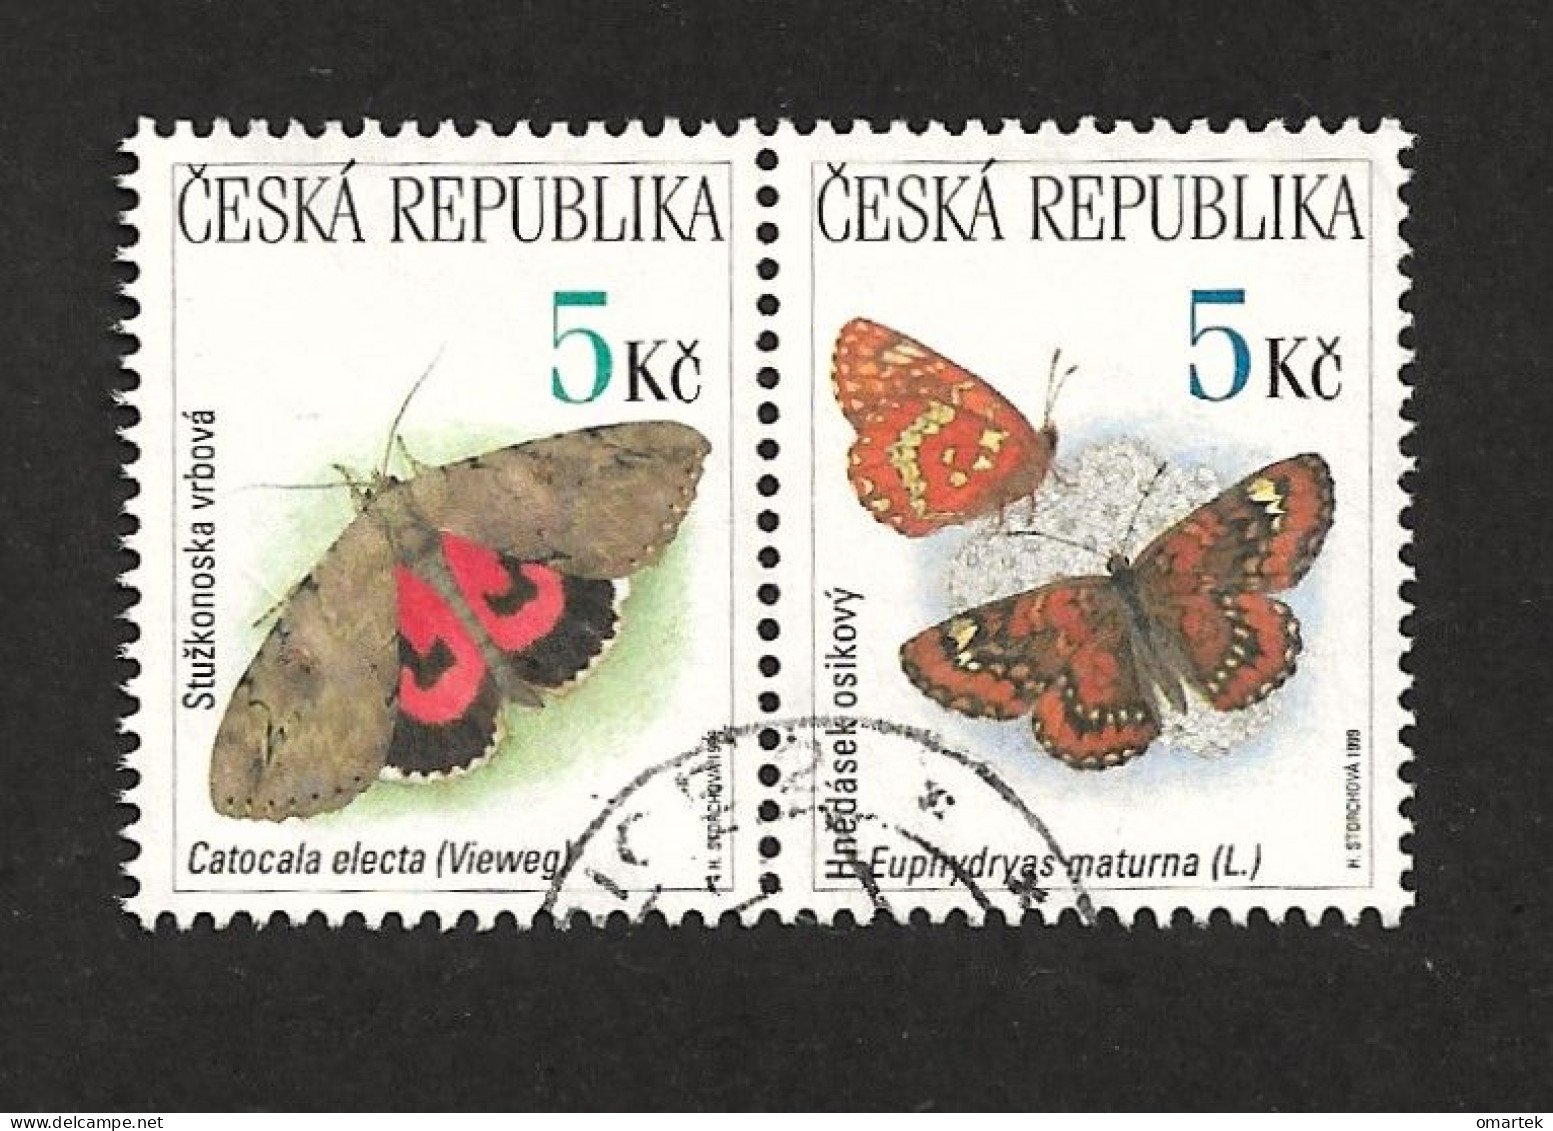 Czech Republic 1999 ⊙ Mi 209, 210 Sc 3083, 3084 Butterflies, Schmetterling. Tschechische Republik - Usados